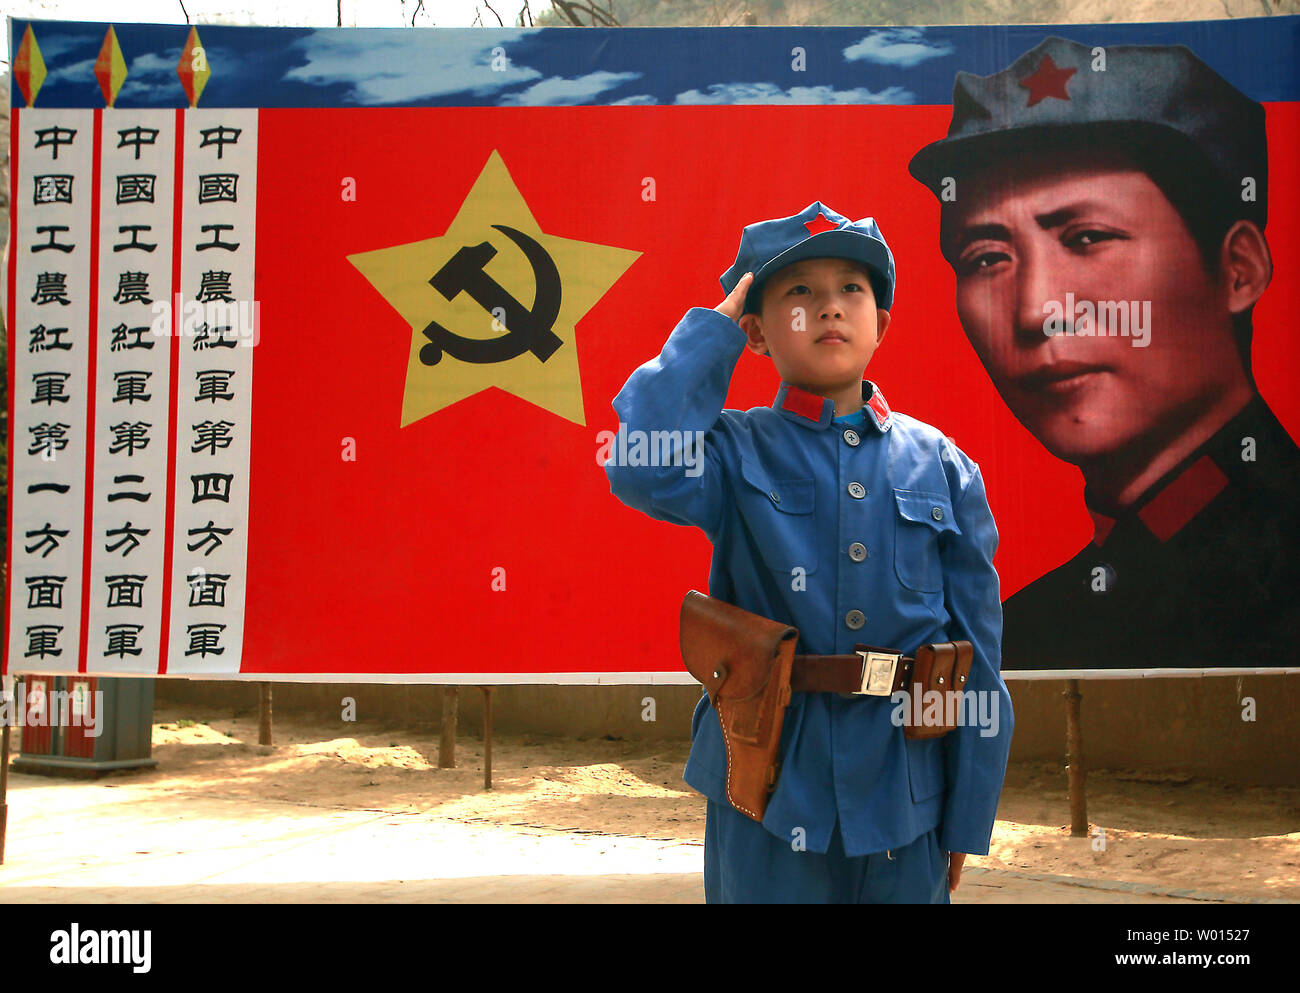 Un muchacho chino vestido con un uniforme comunista posa para una foto delante de una pancarta del partido comunista soldado ideal Li Feng, en un lugar utilizado por el ex Timonel Mao Zedong y otros líderes para discutir sobre políticas y estrategias para el futuro en la revolución Yangjialing, en Yan'an, provincia de Shaanxi, el 6 de abril de 2014. Yan'an fue cerca del final de la Larga Marcha, y se convirtió en el centro de la revolución comunista chino llevó a mi Mao desde el 1936 al 1948. Los comunistas chinos celebran la ciudad como el lugar de nacimiento de la China moderna y el culto de Mao. UPI/Stephen afeitadora Foto de stock